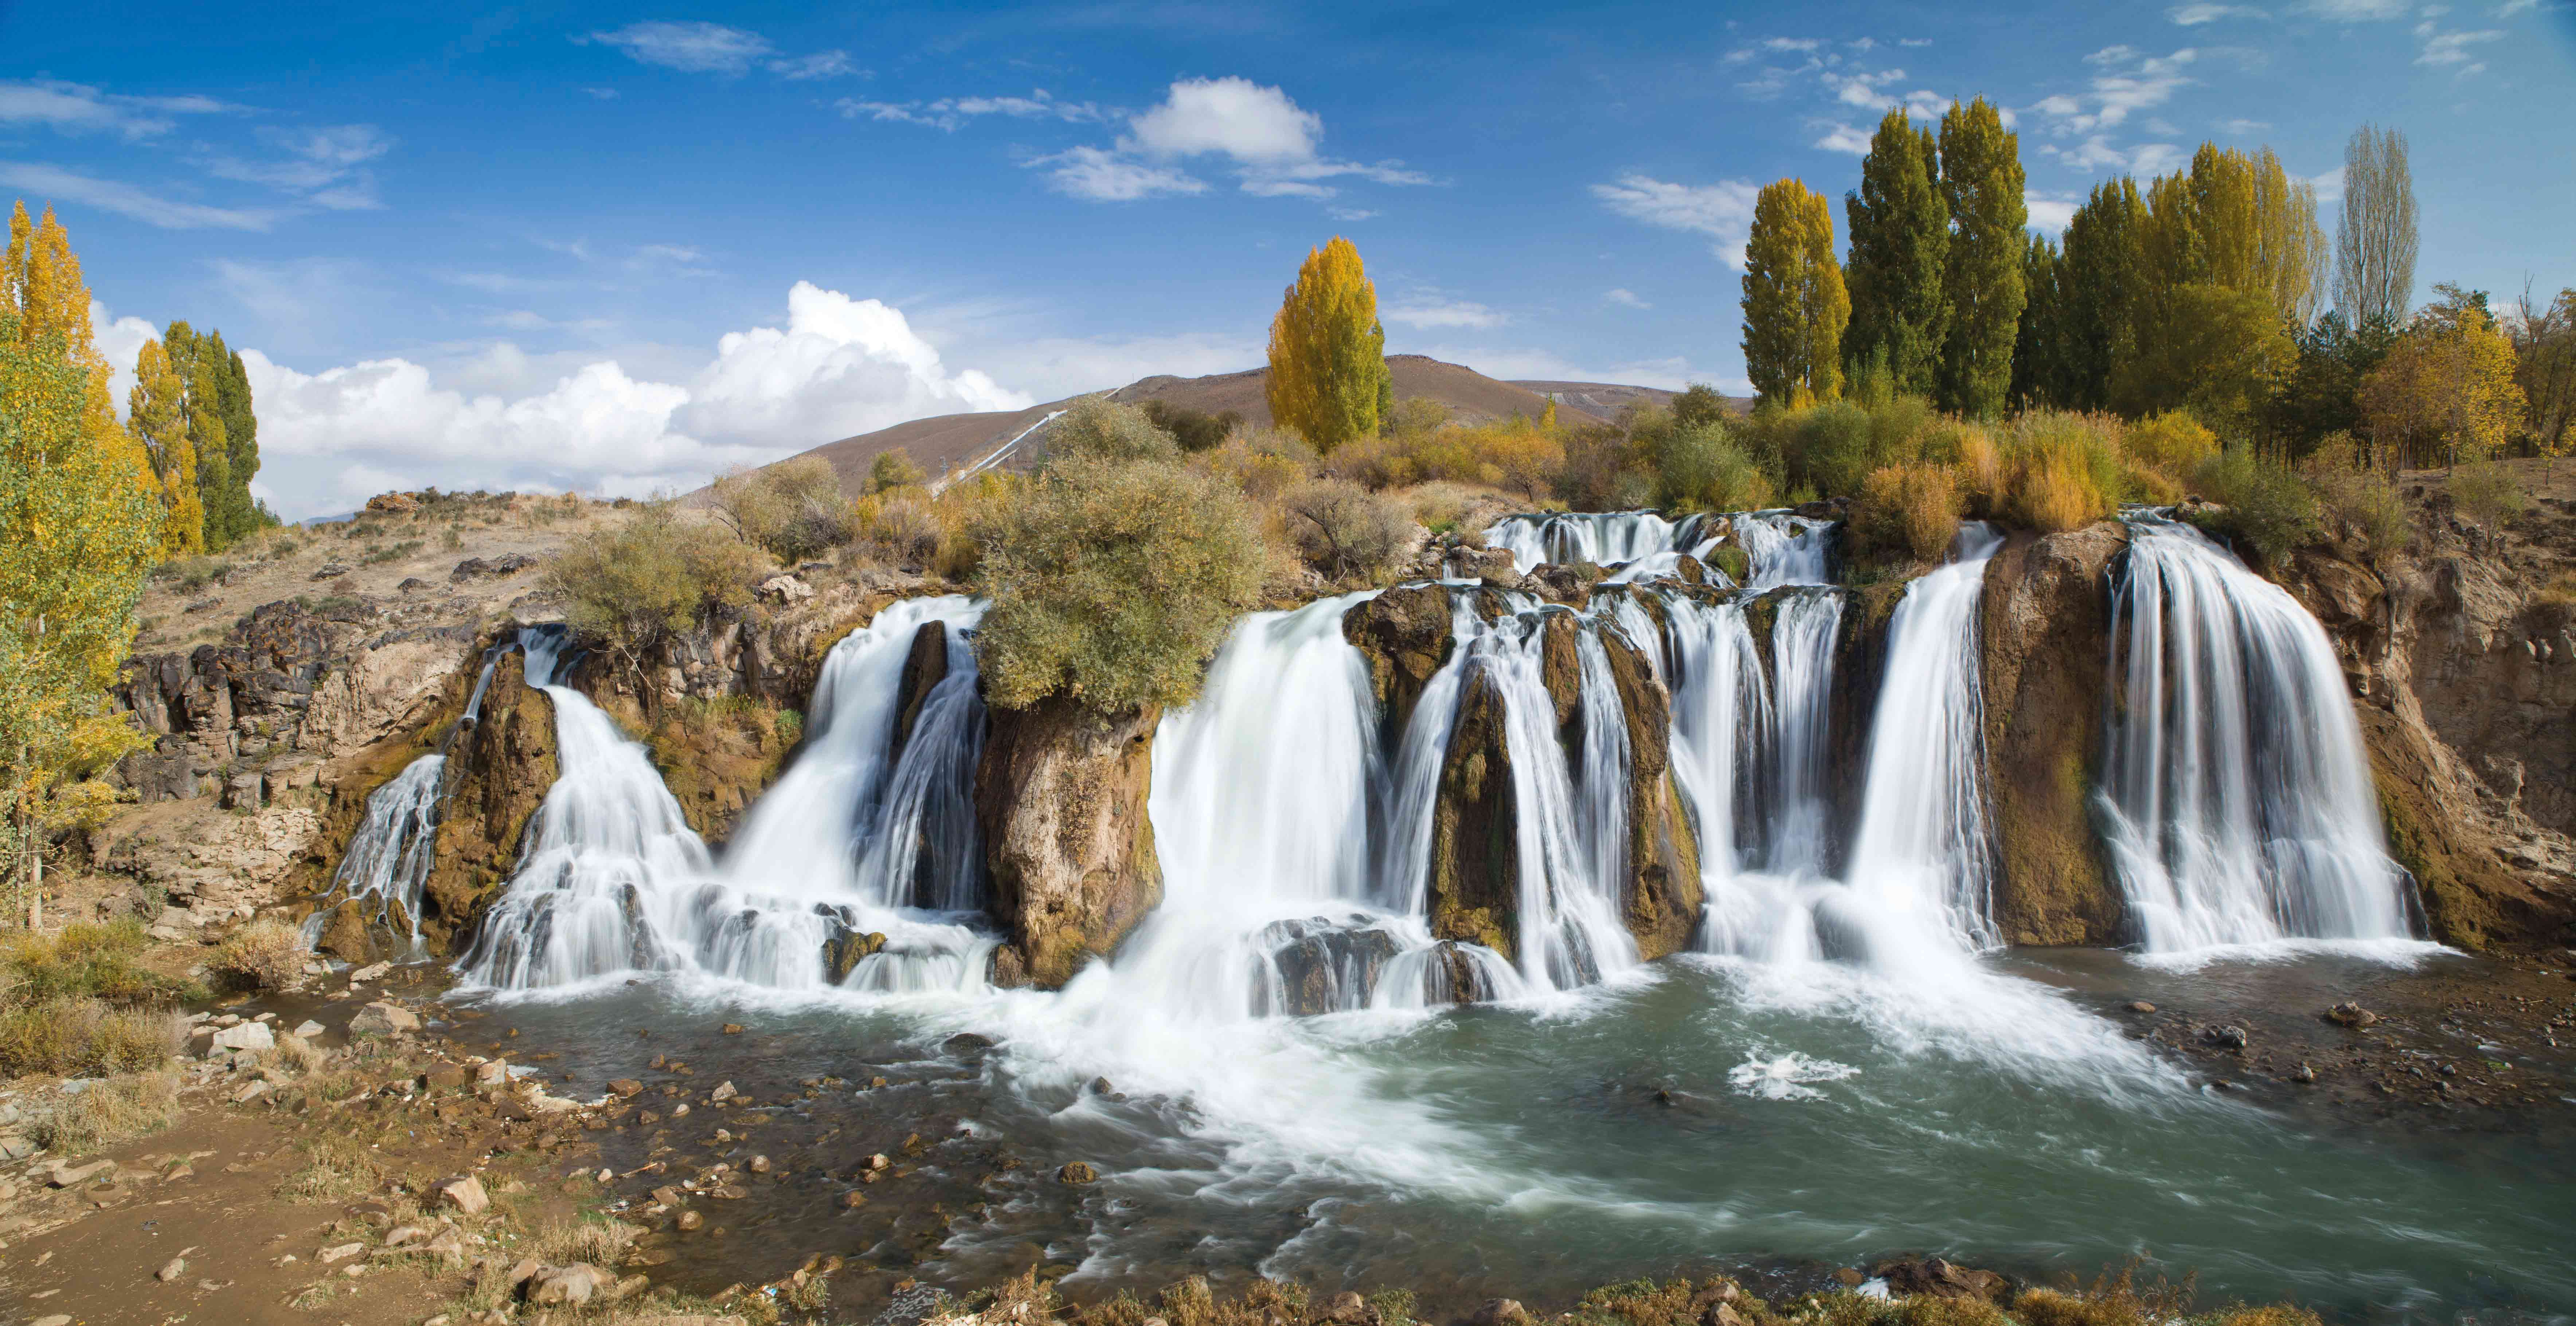 Türkiye’nin doğal güzellikleri Aksa Doğalgaz Faaliyet Raporu’nda toplandı